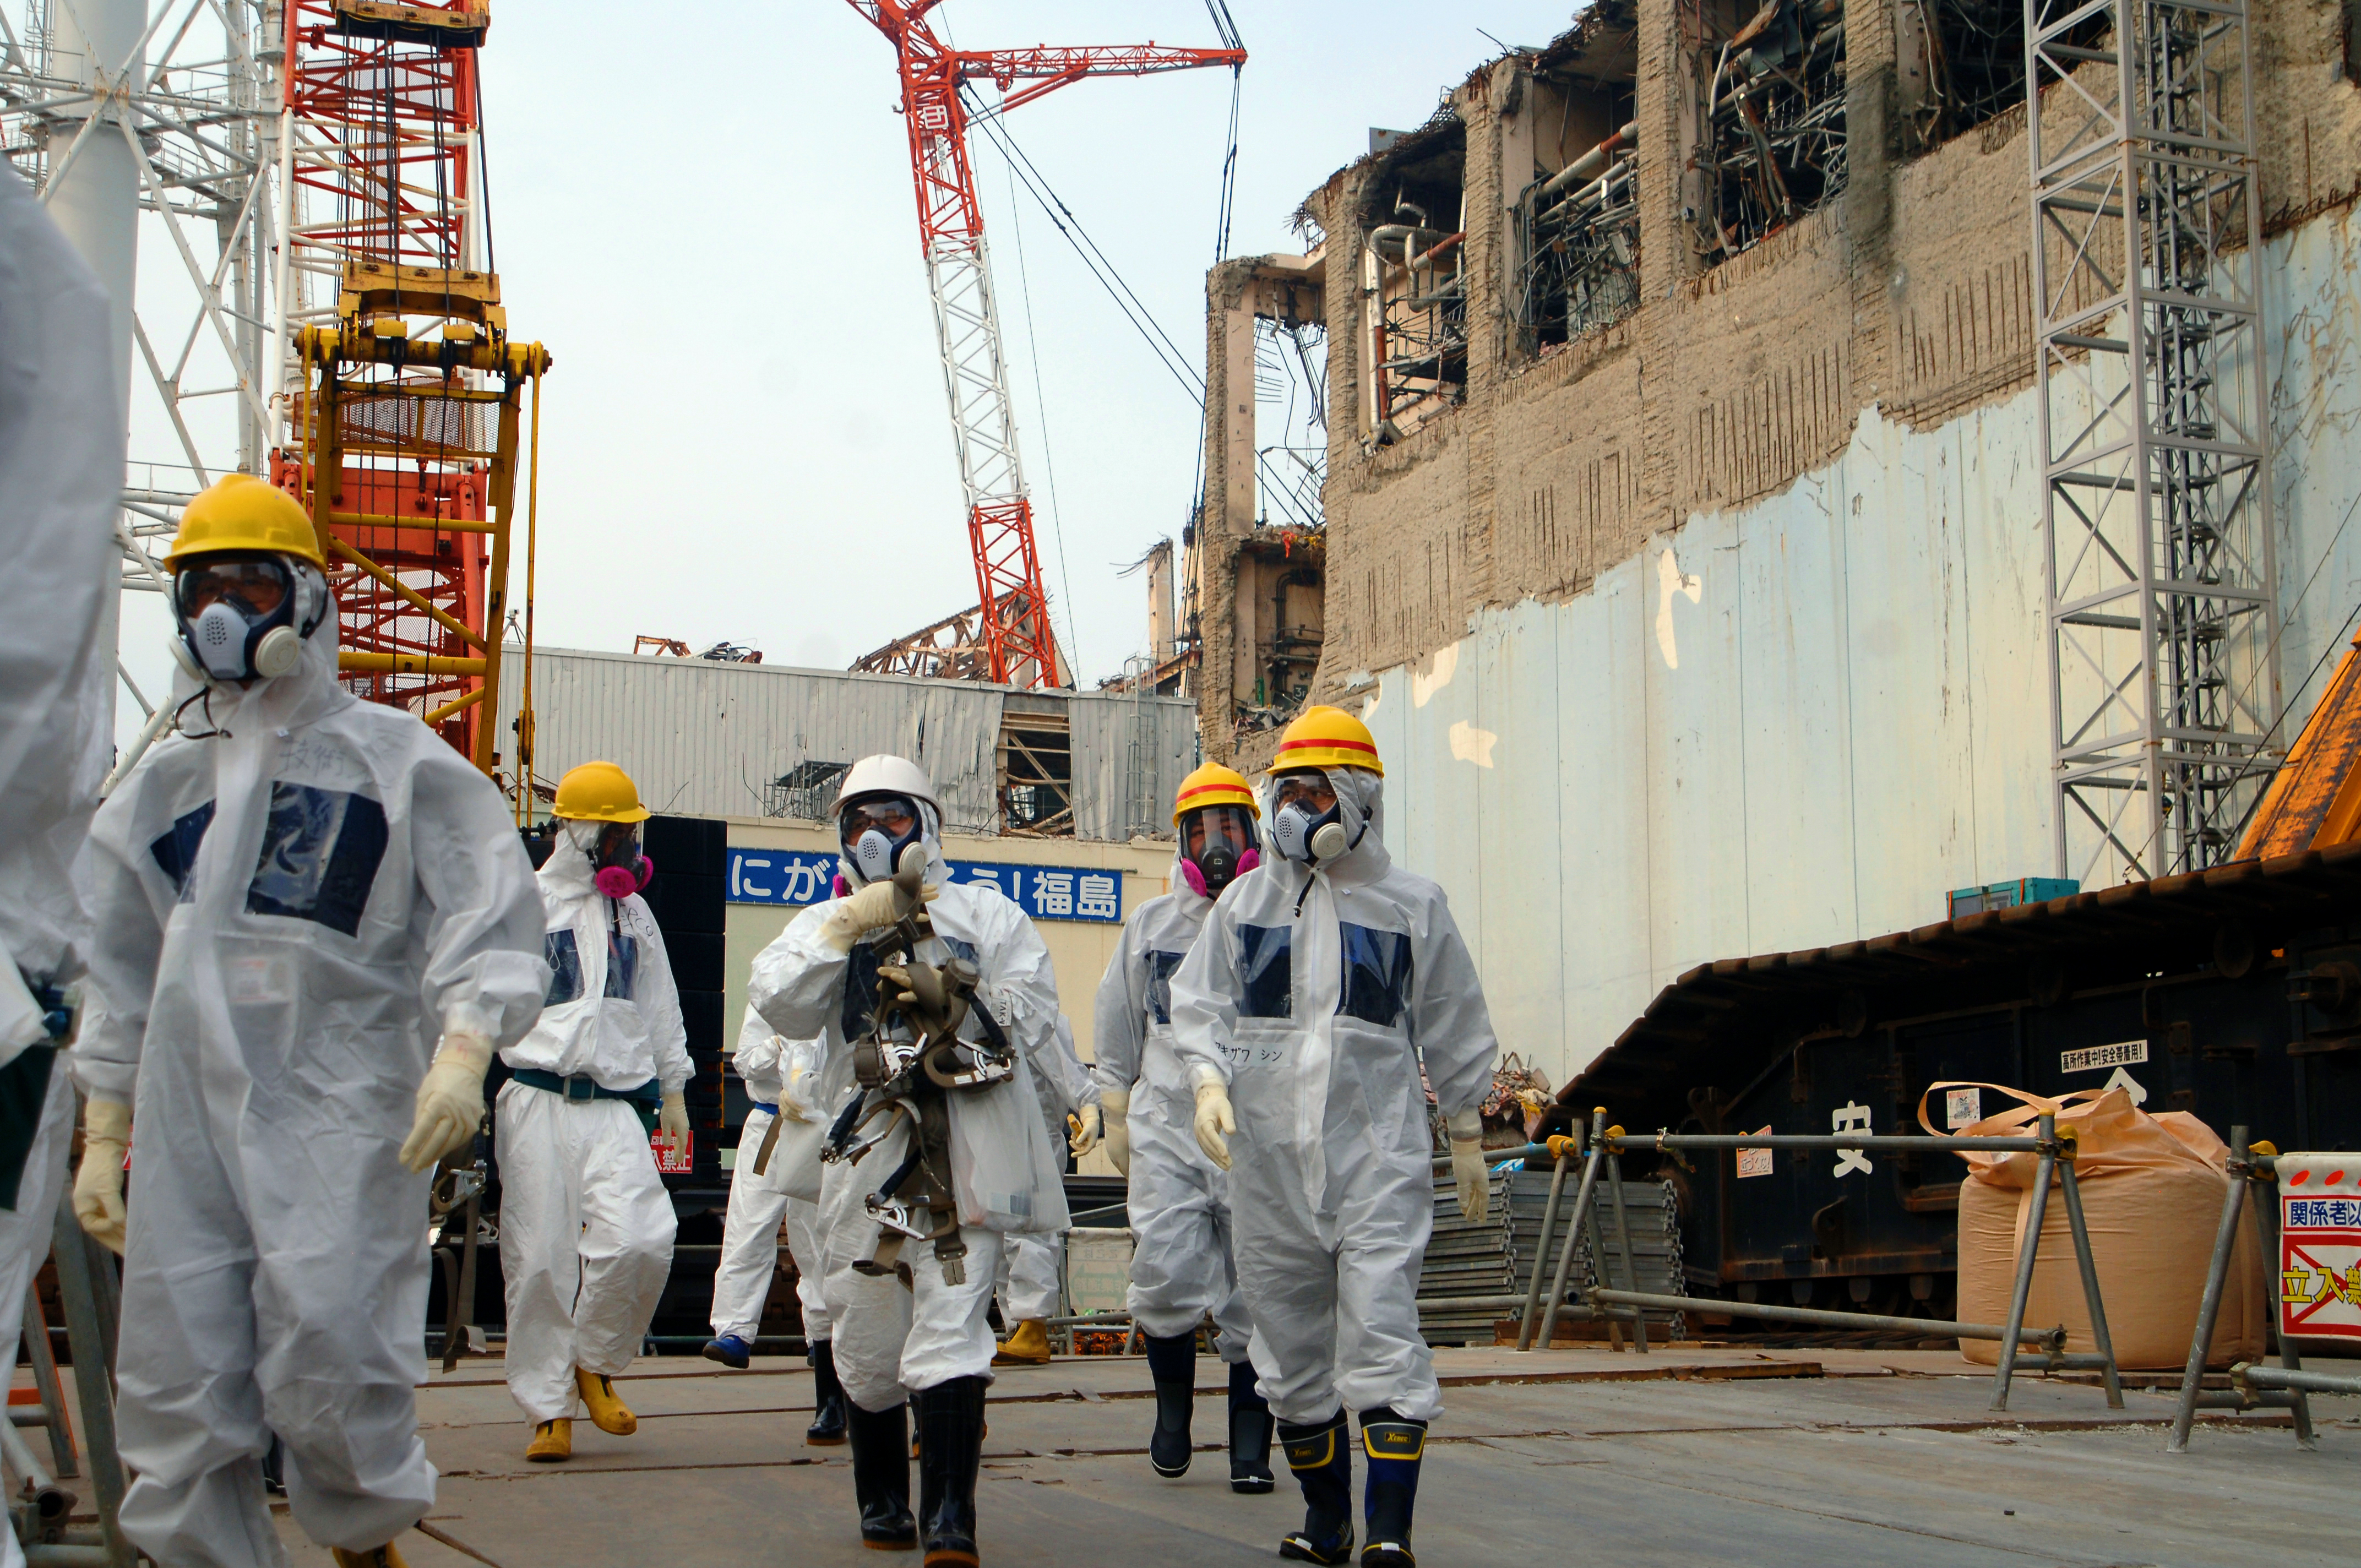 IAEA_Experts_at_Fukushima_02813336.jpg